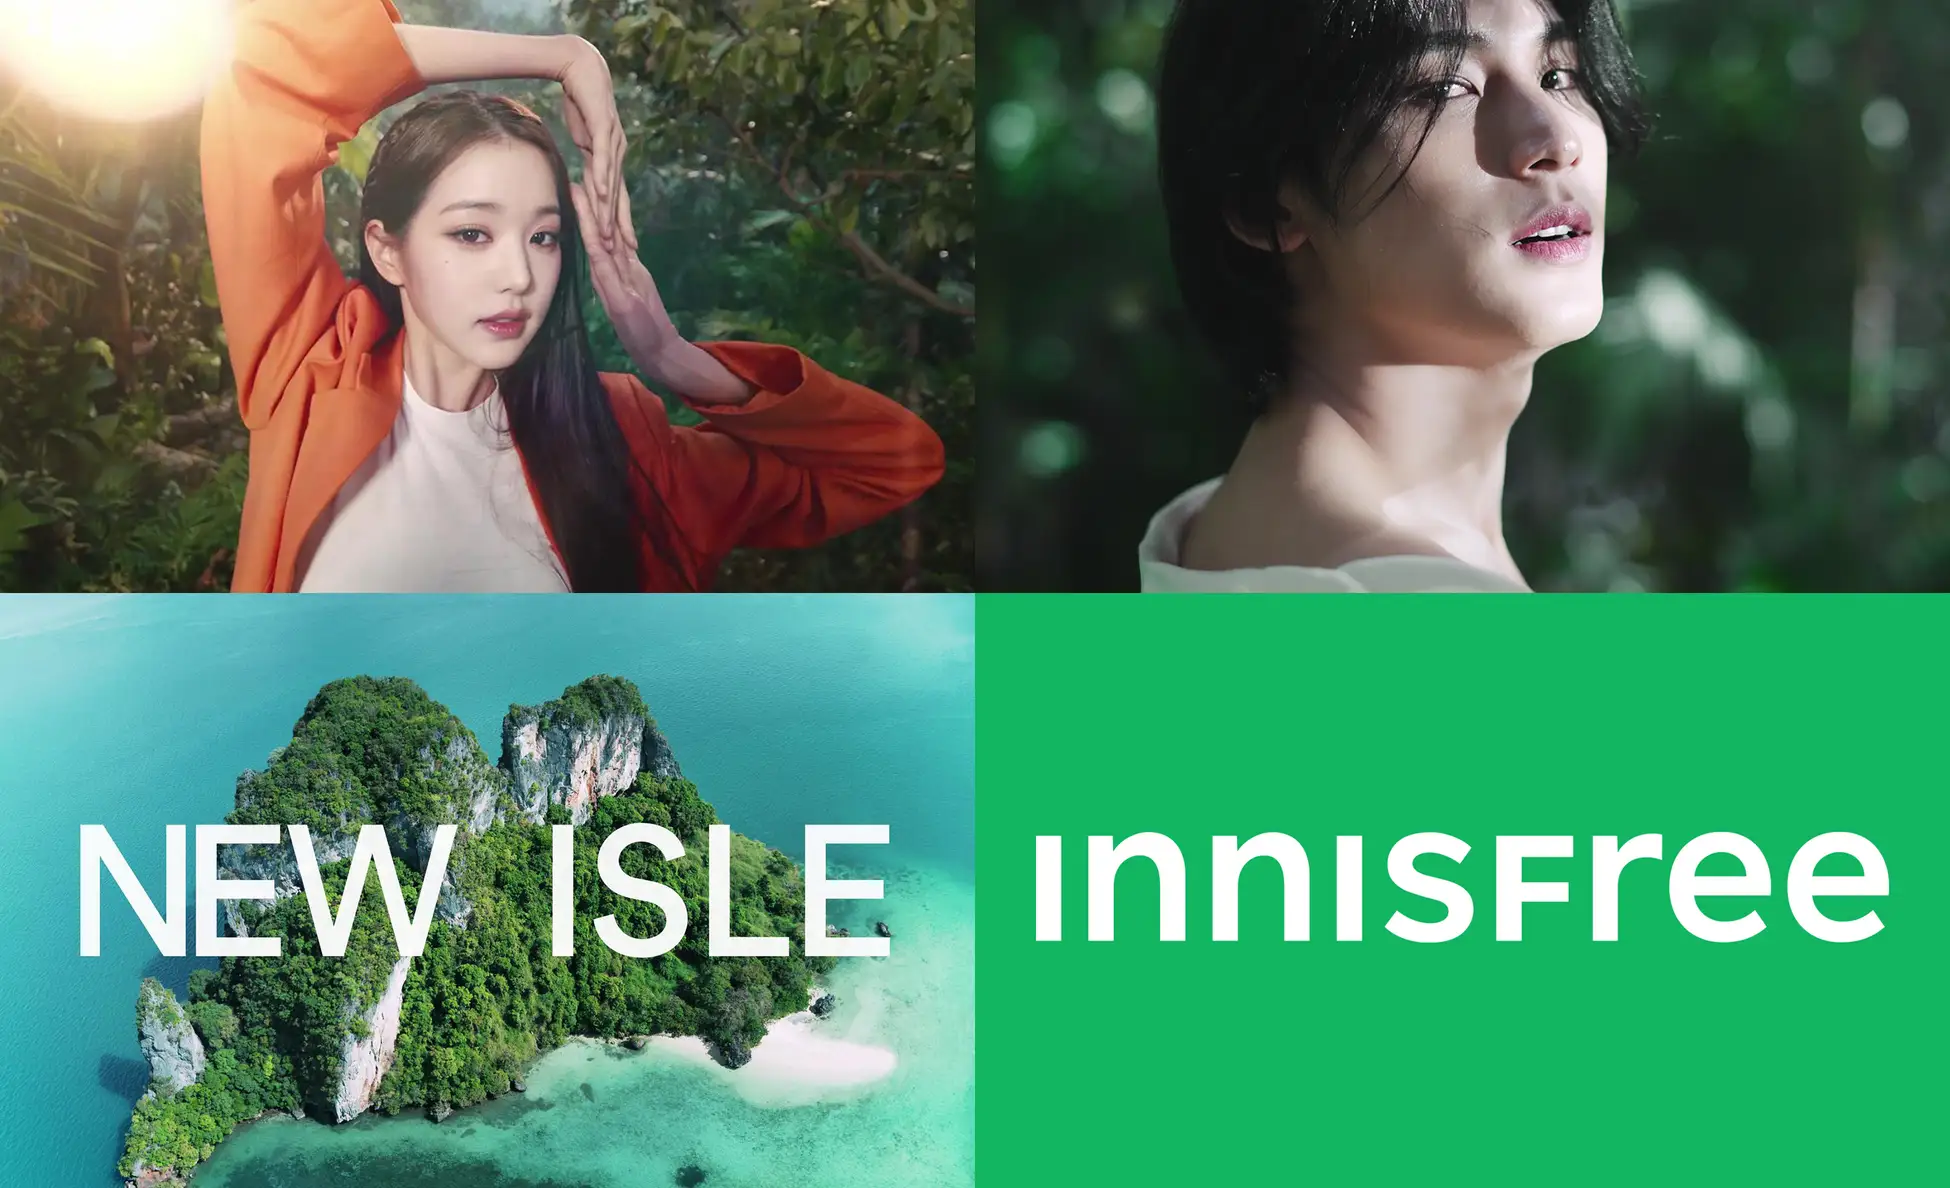 NNISFREE「THE NEW ISLE」キャンペーンを開始 チャン・ウォニョン、SEVENTEENのMINGYUを新ブランドモデルとして起用